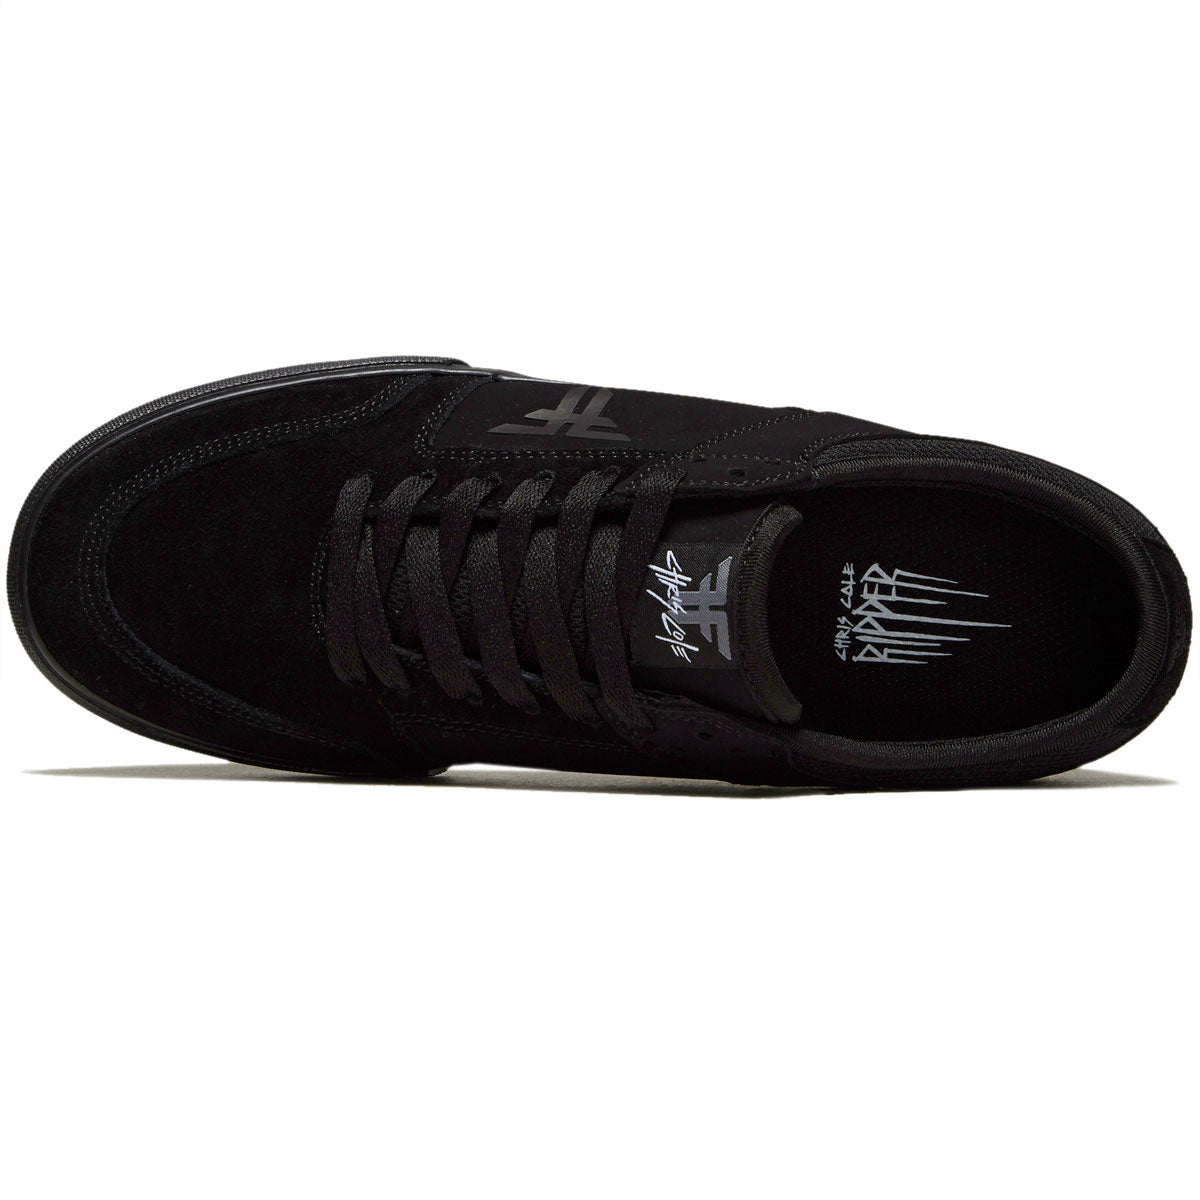 Fallen Ripper Chris Cole Shoes - Black/Black image 3